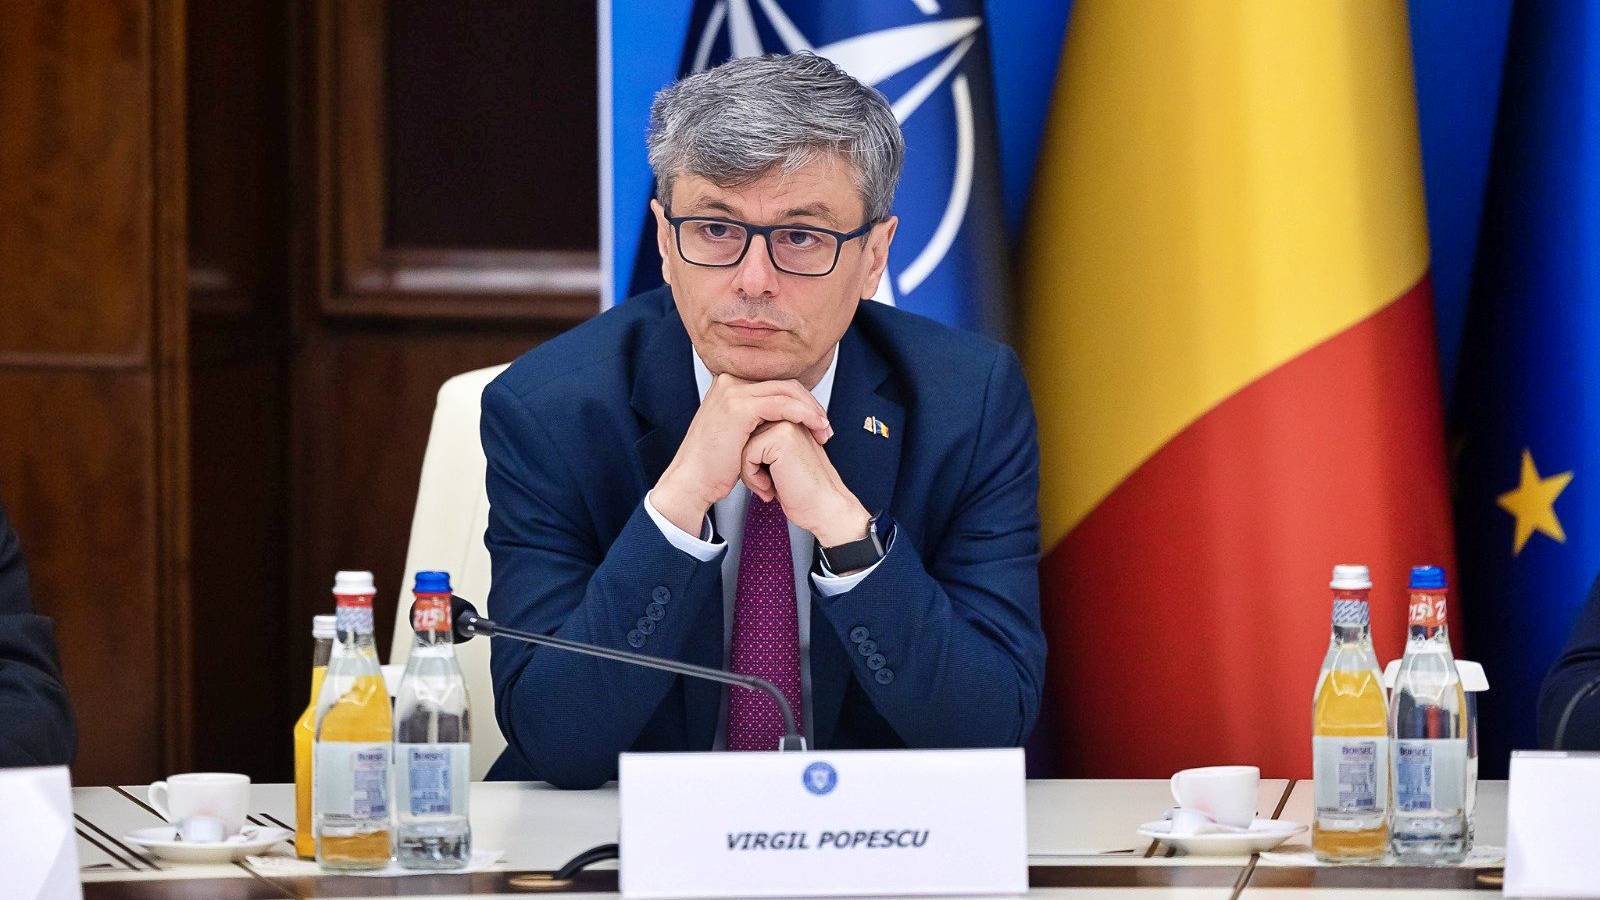 Virgil Popescu Declaración de último minuto Decisiones estratégicas importantes Rumania